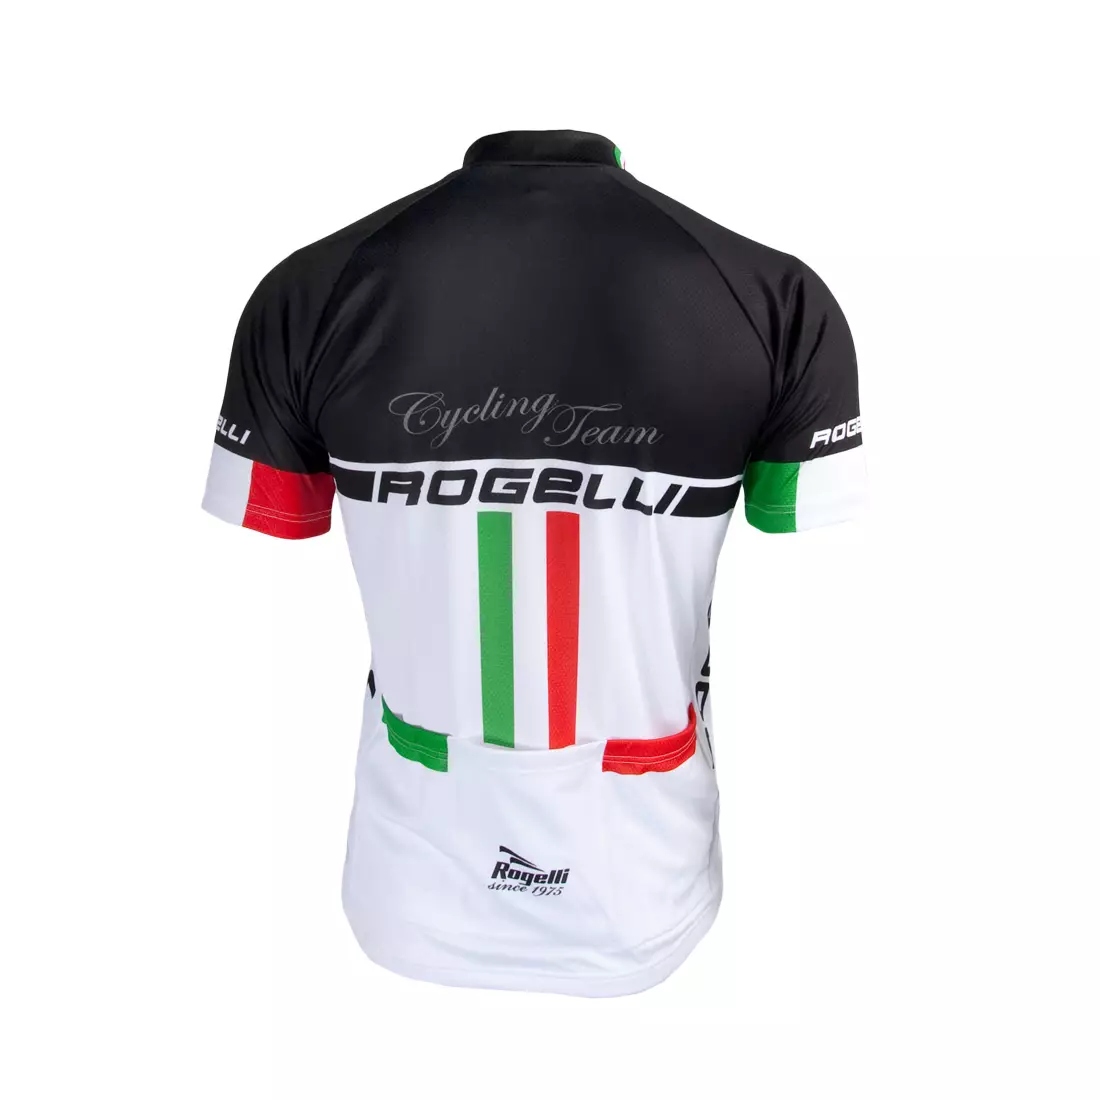 ROGELLI - CYCLING TEAM - pánsky cyklistický dres